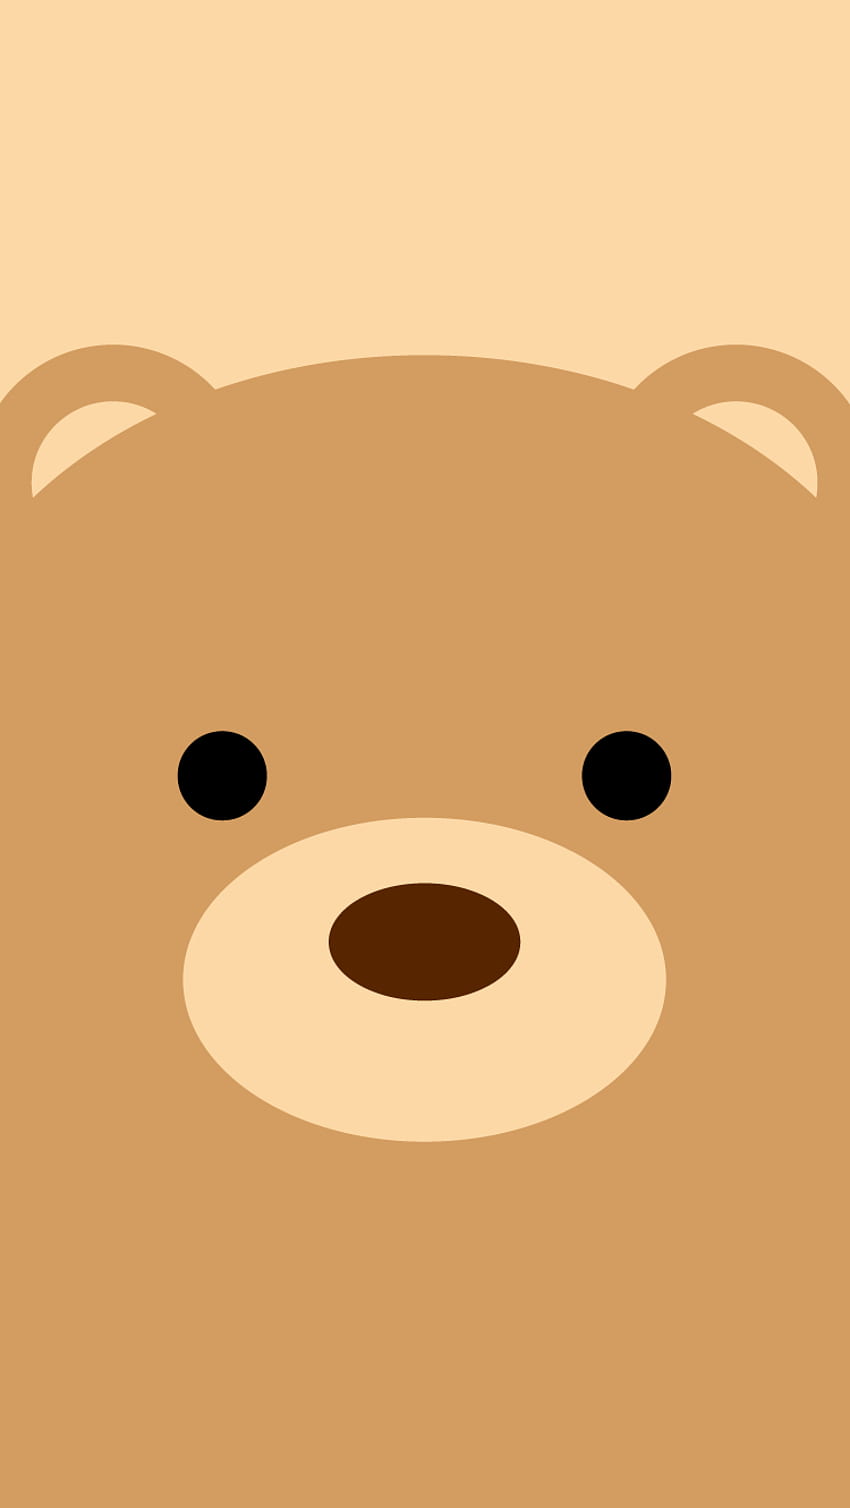 Teddy bear , teddy bear, stuffed toy, toy, plush, font - Use, Brown ...